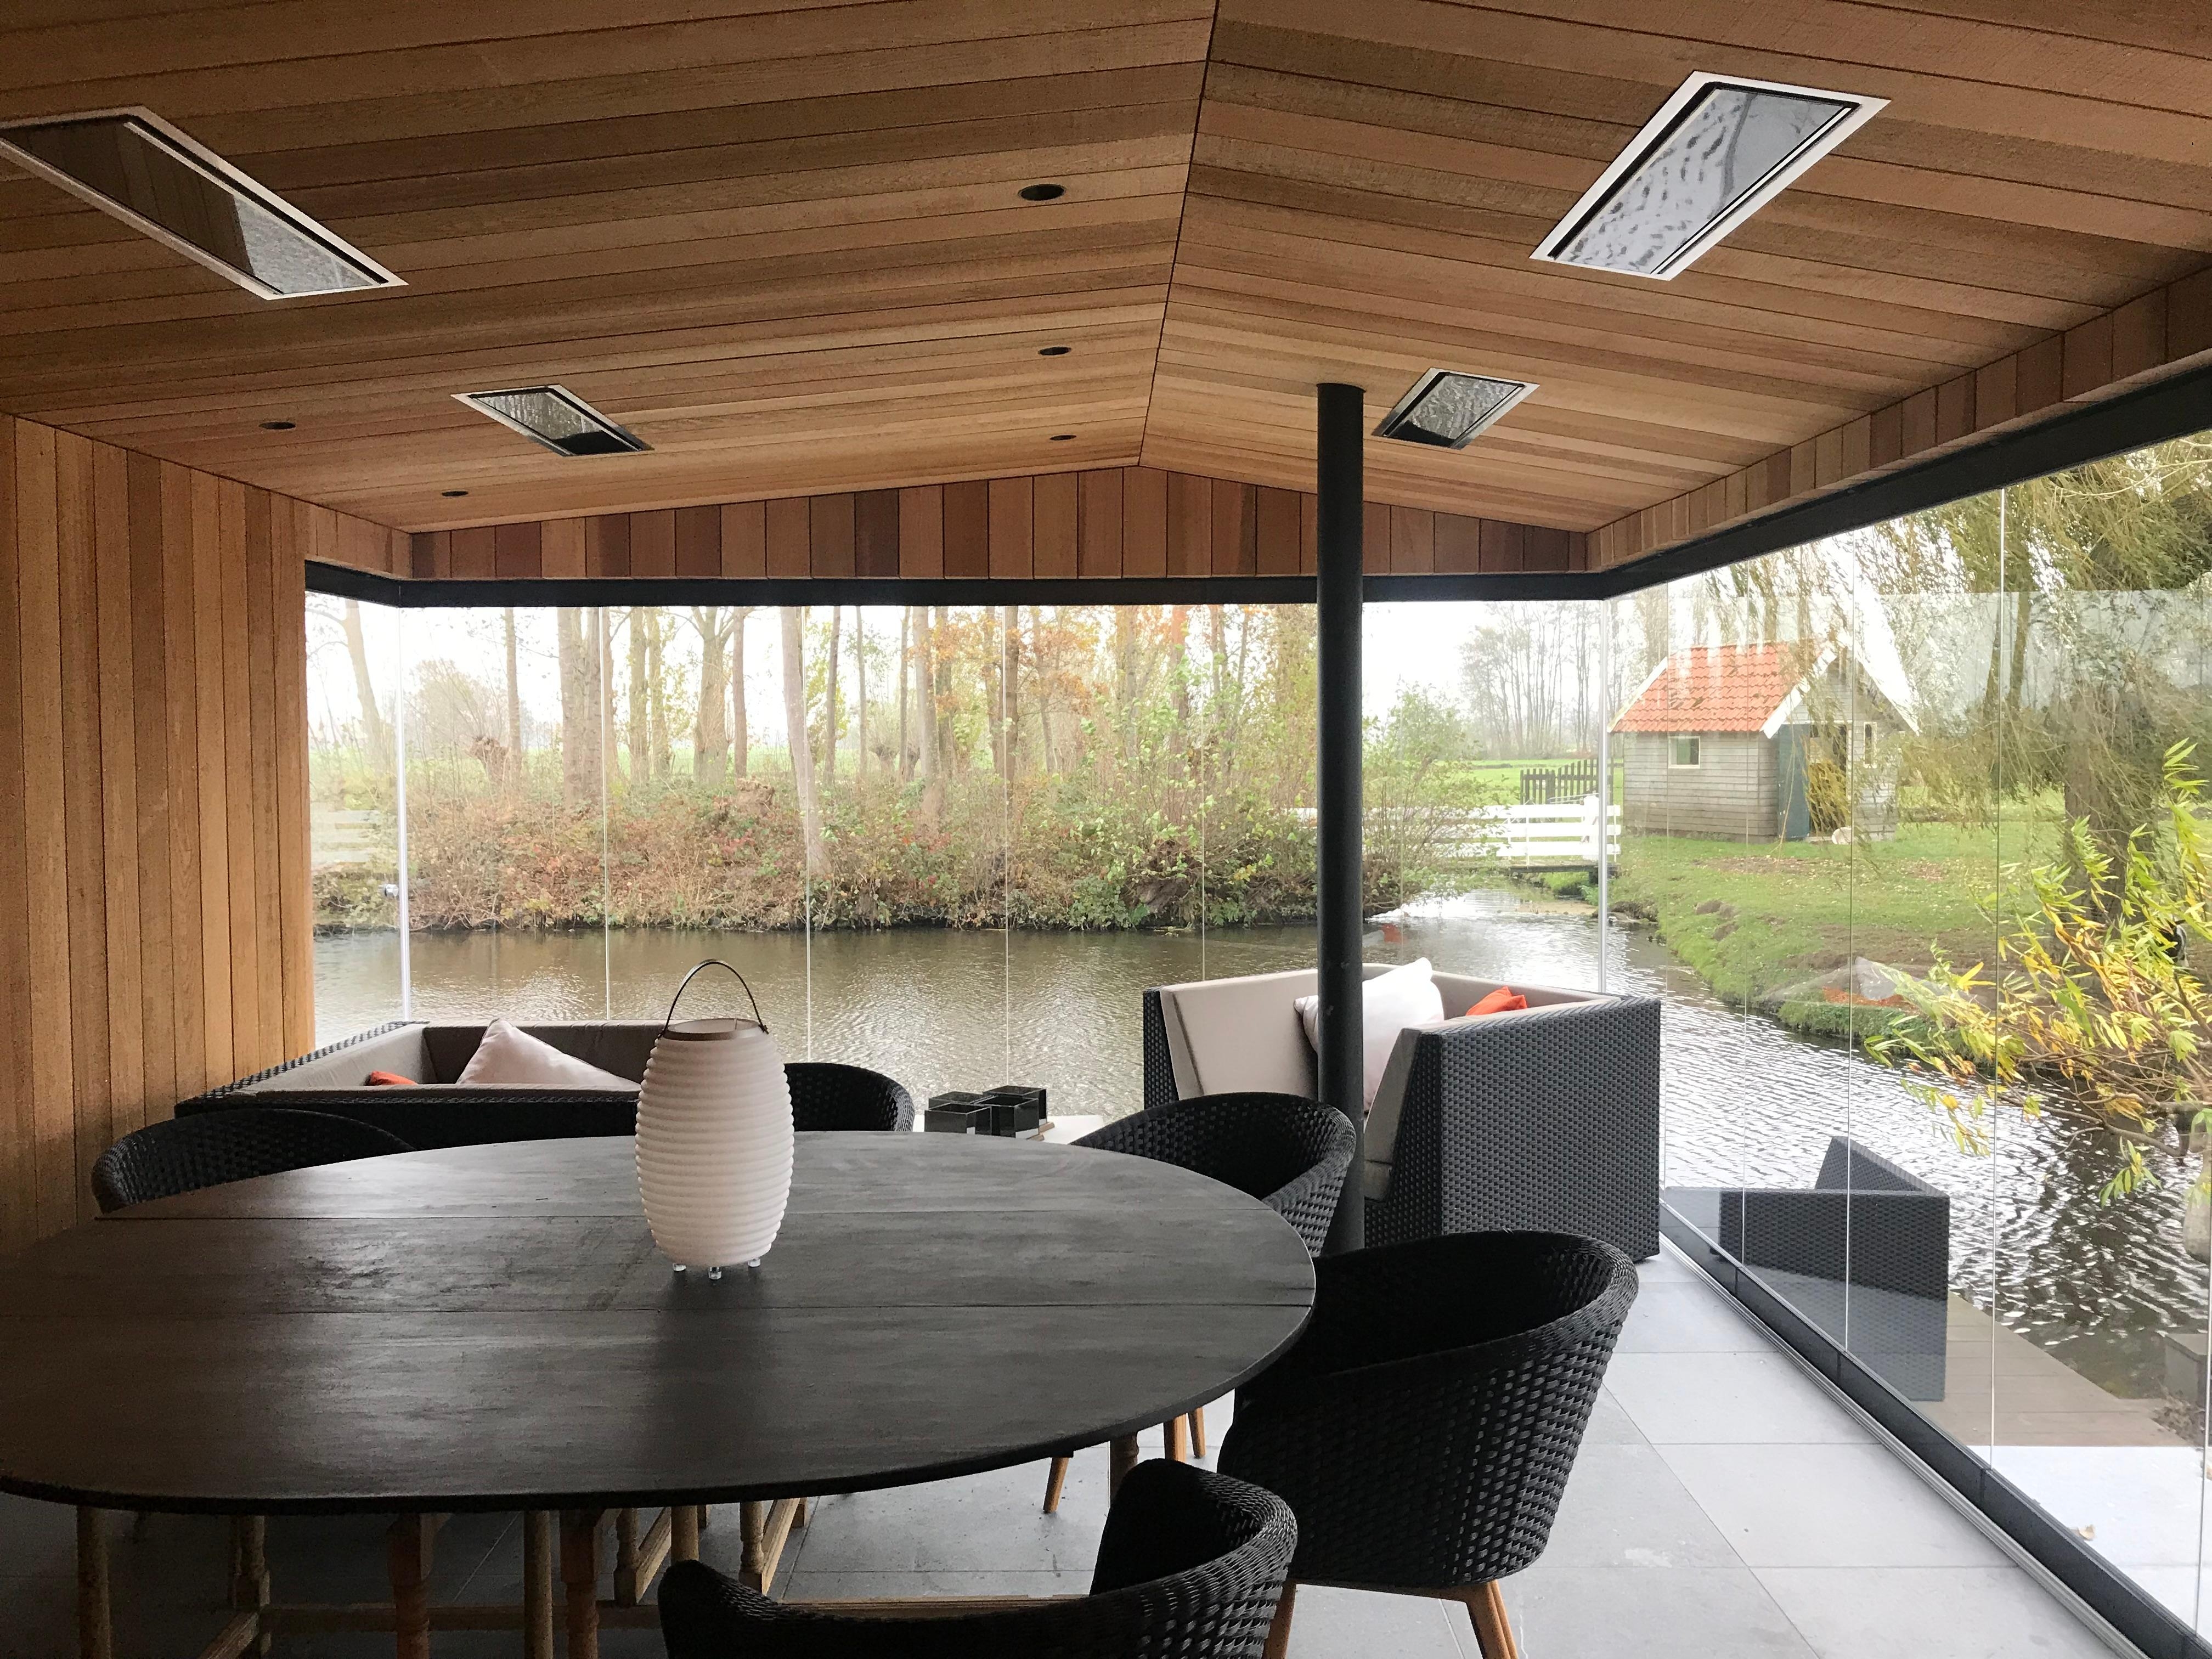 Moderne Gartenhäuser mit Glas-Schiebe-Drehtüren in Nurglasoptik! #Sunflex #Schiebesysteme